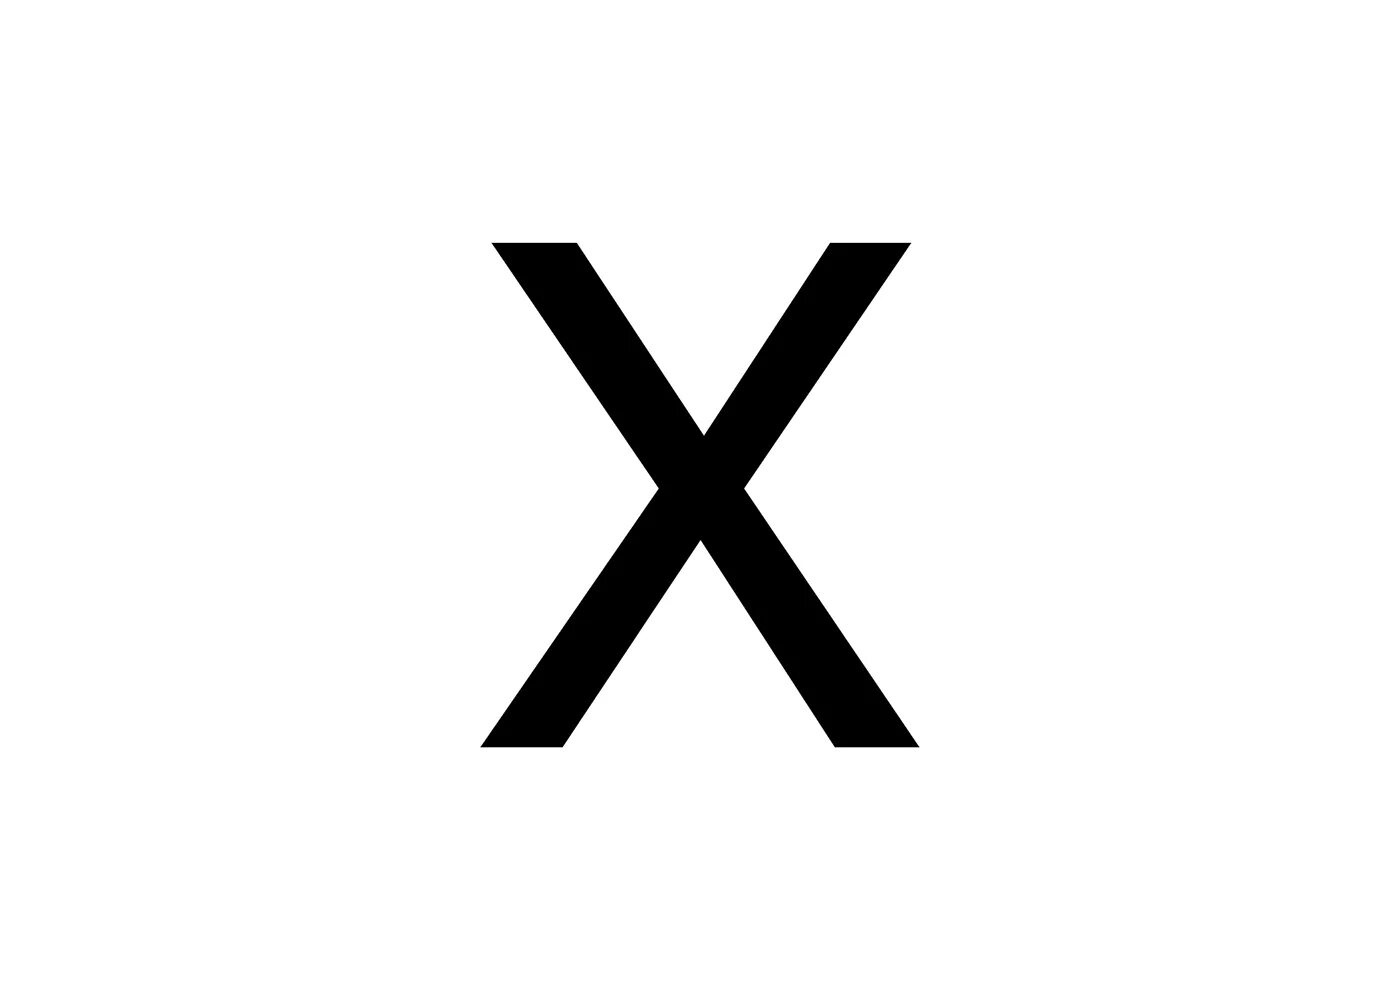 1 х последняя и краткая. Знак умножения крестик. Логотип x. Обои с буквой х. Римские цифры 10.